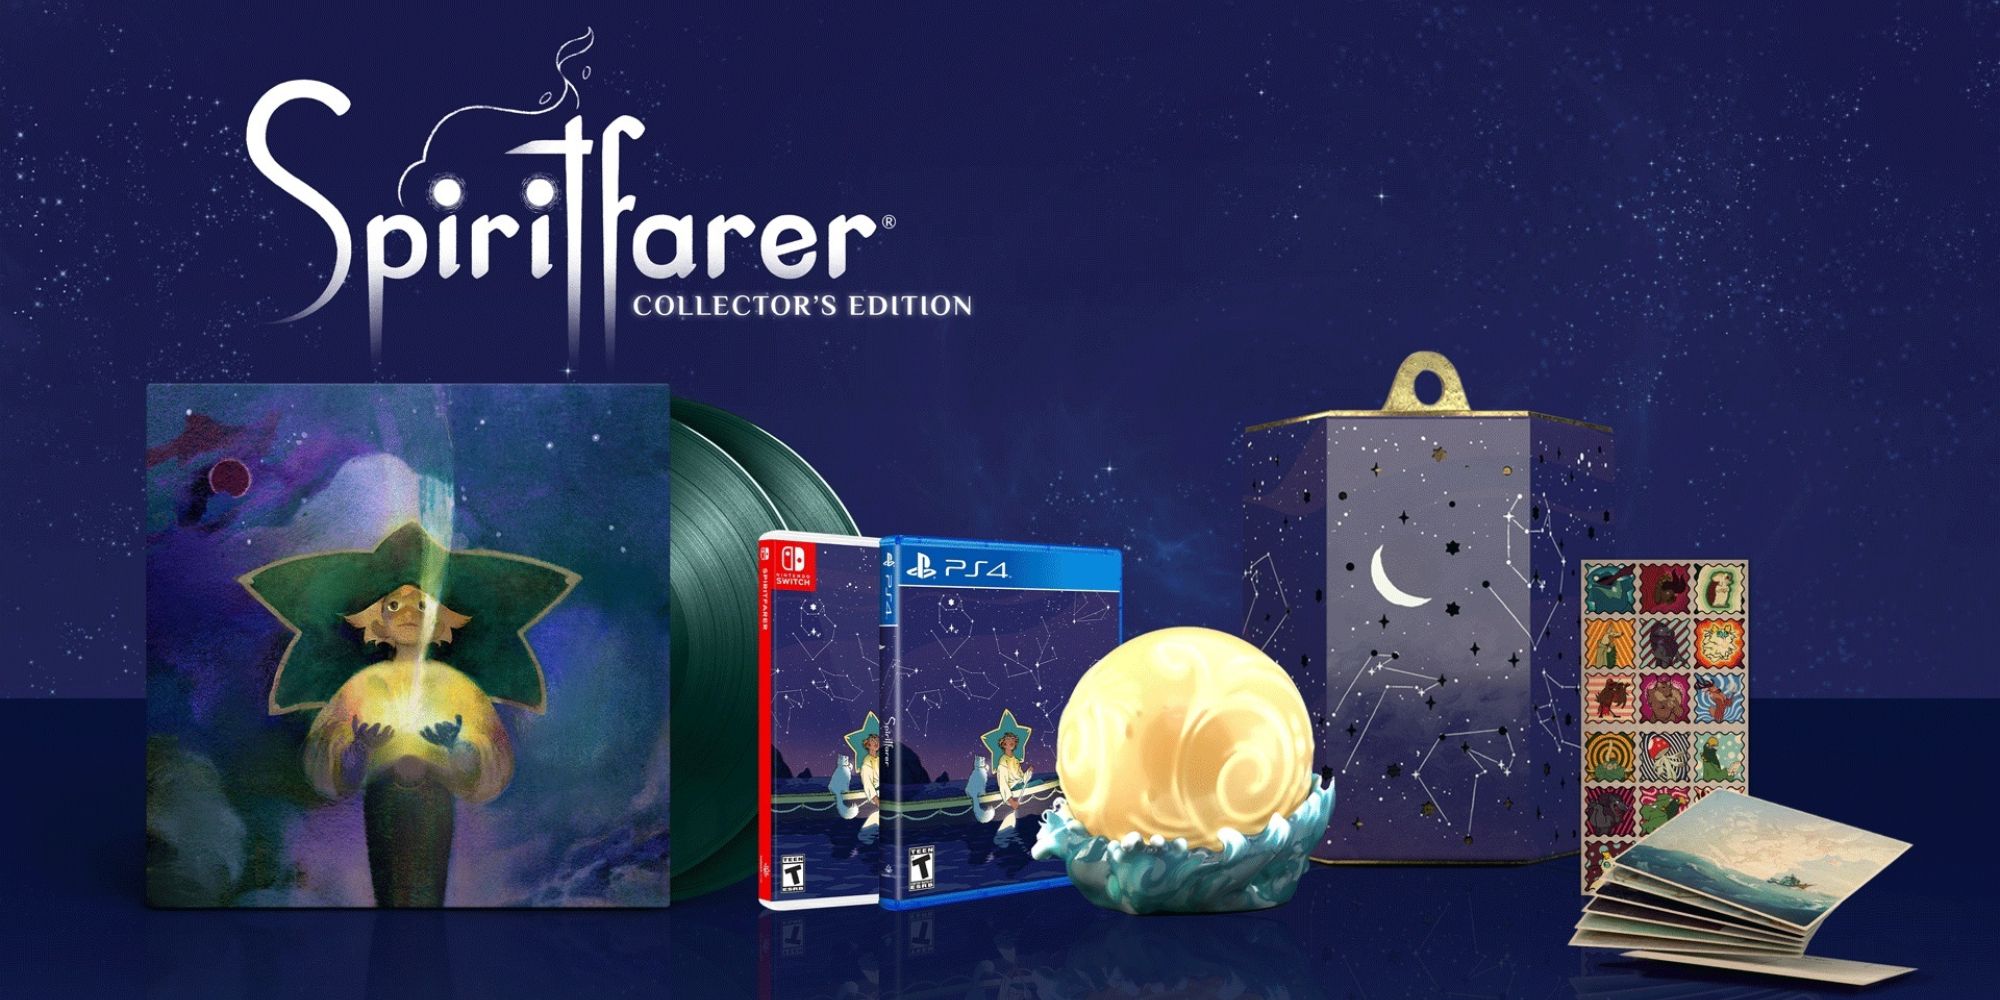 The Collector's Edition for Spiritfarer